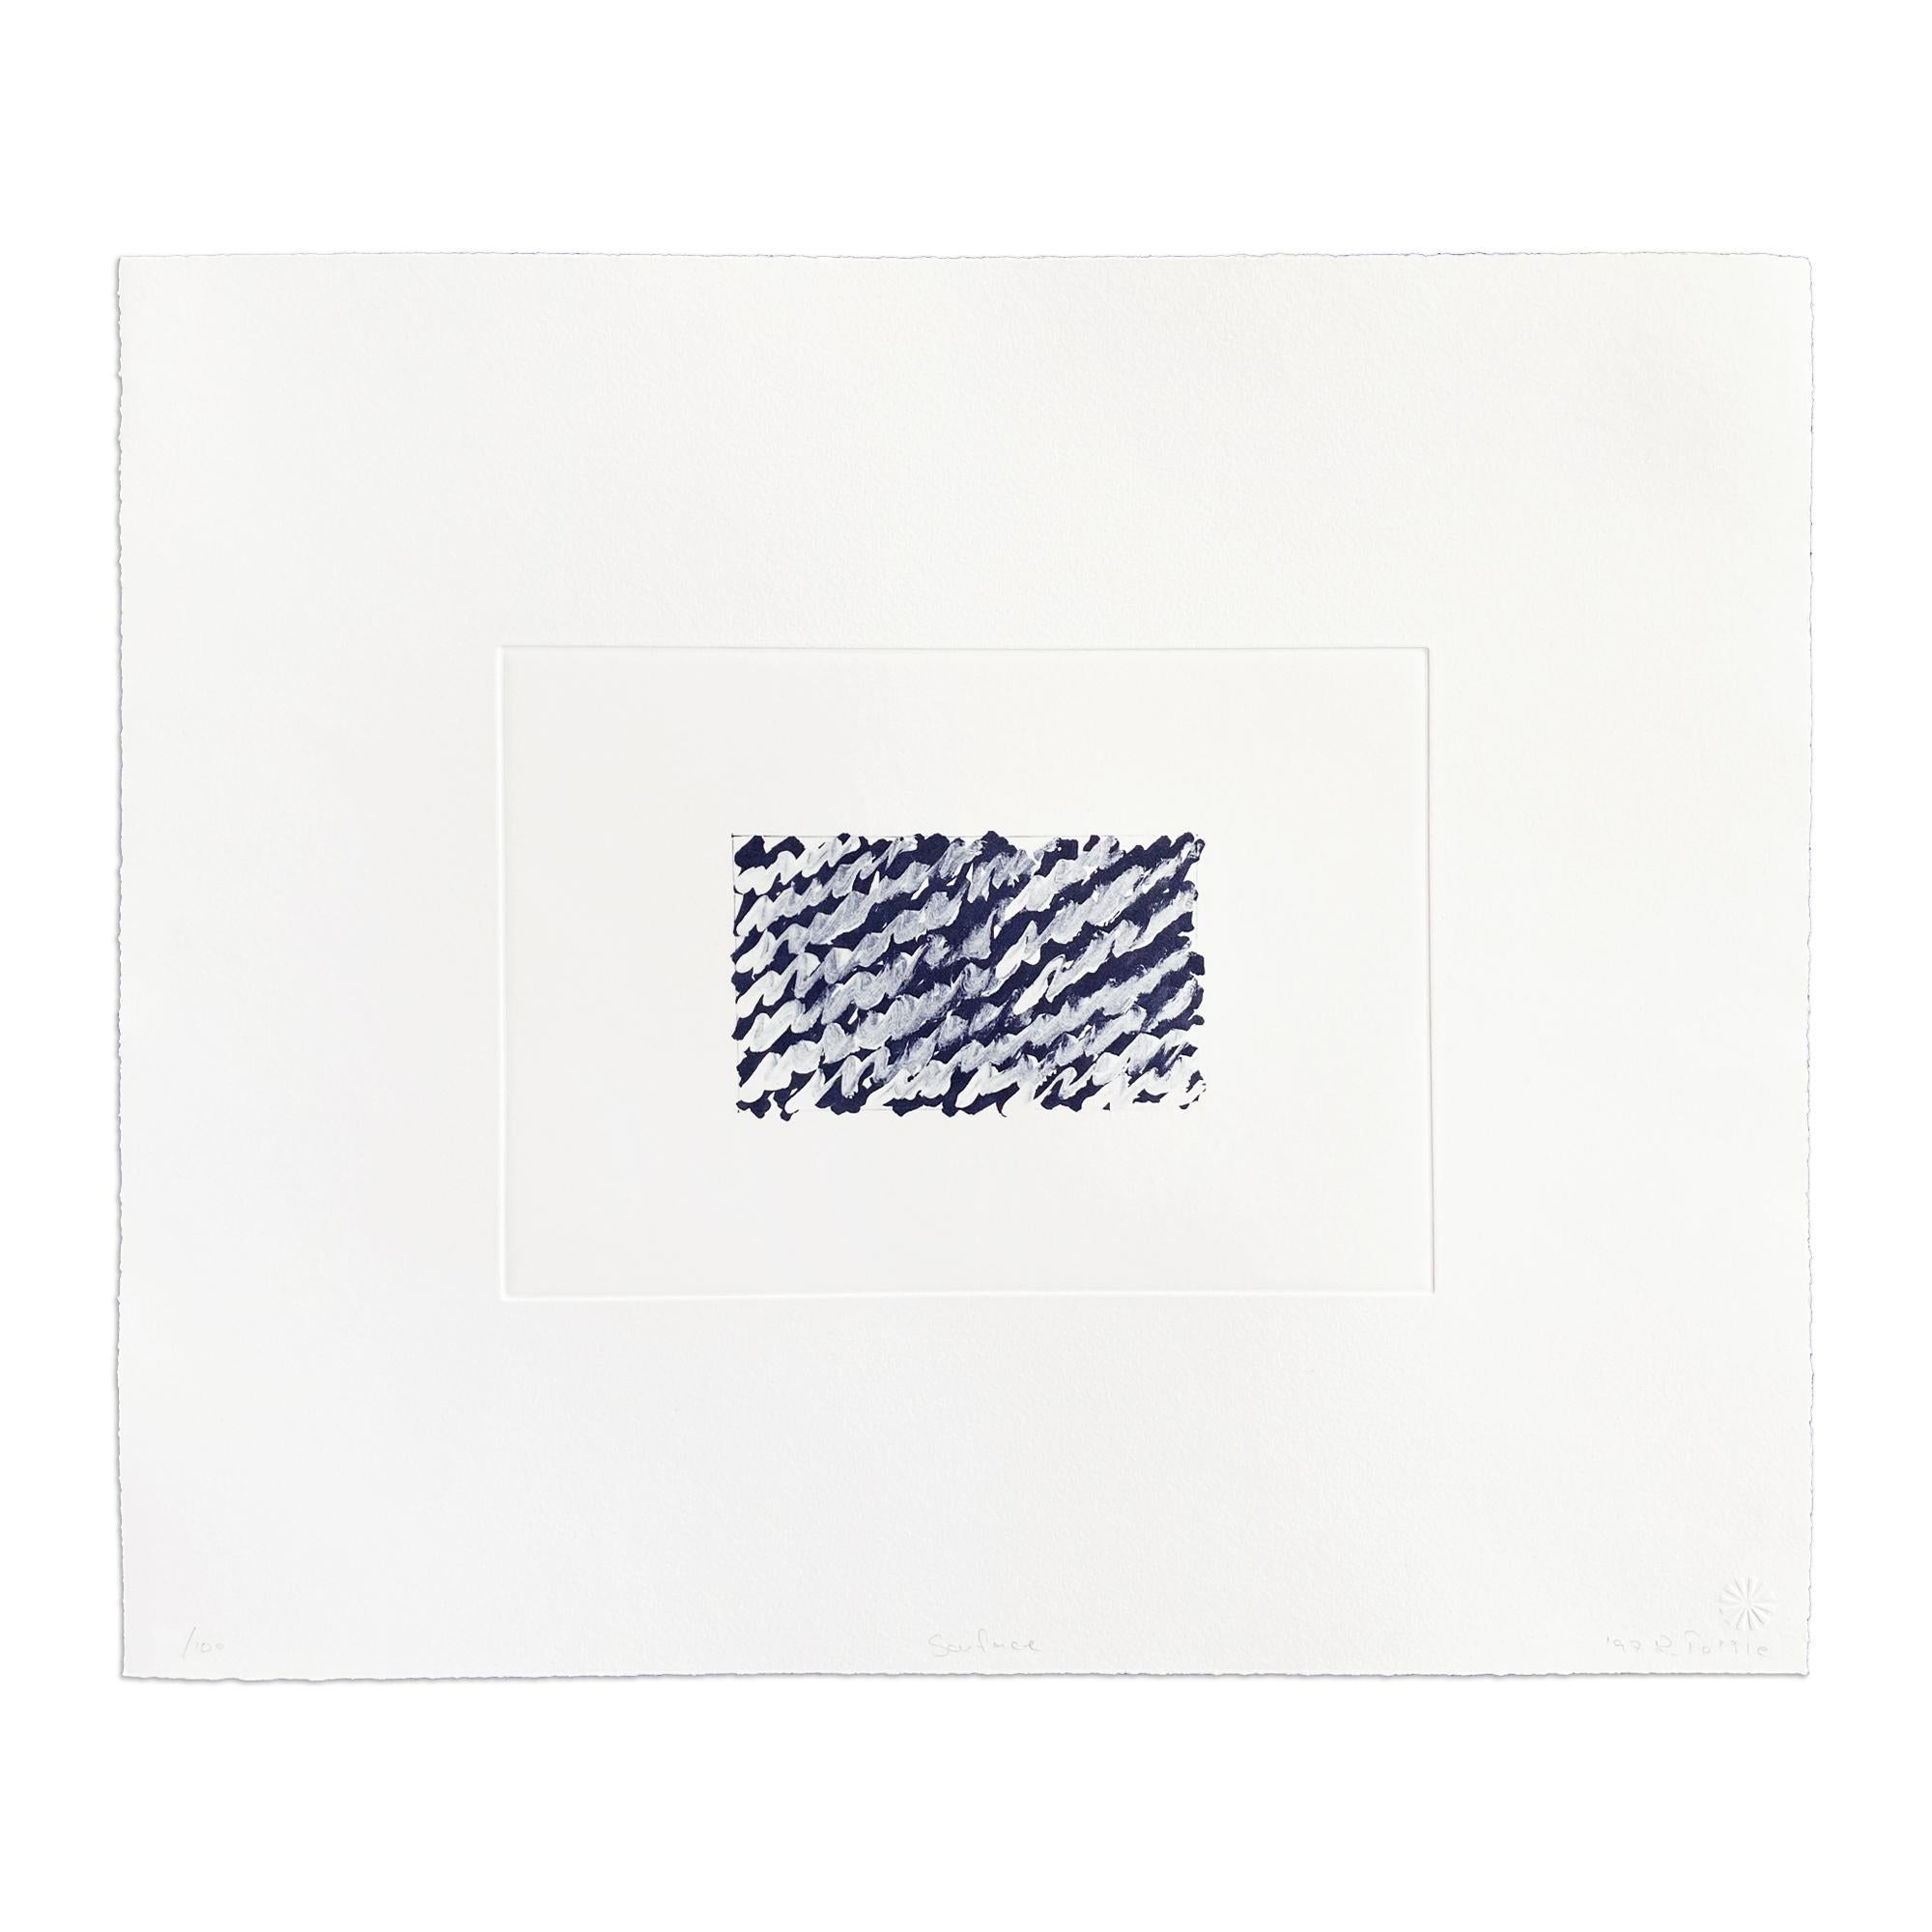 Richard Tuttle (américain, né en 1941)
Surface, 1997
Support : Photogravure sur papier vélin
Dimensions : 15 x 17-3/4 in
Edition de 100 exemplaires : signés et numérotés à la main.
Condit : Excellent